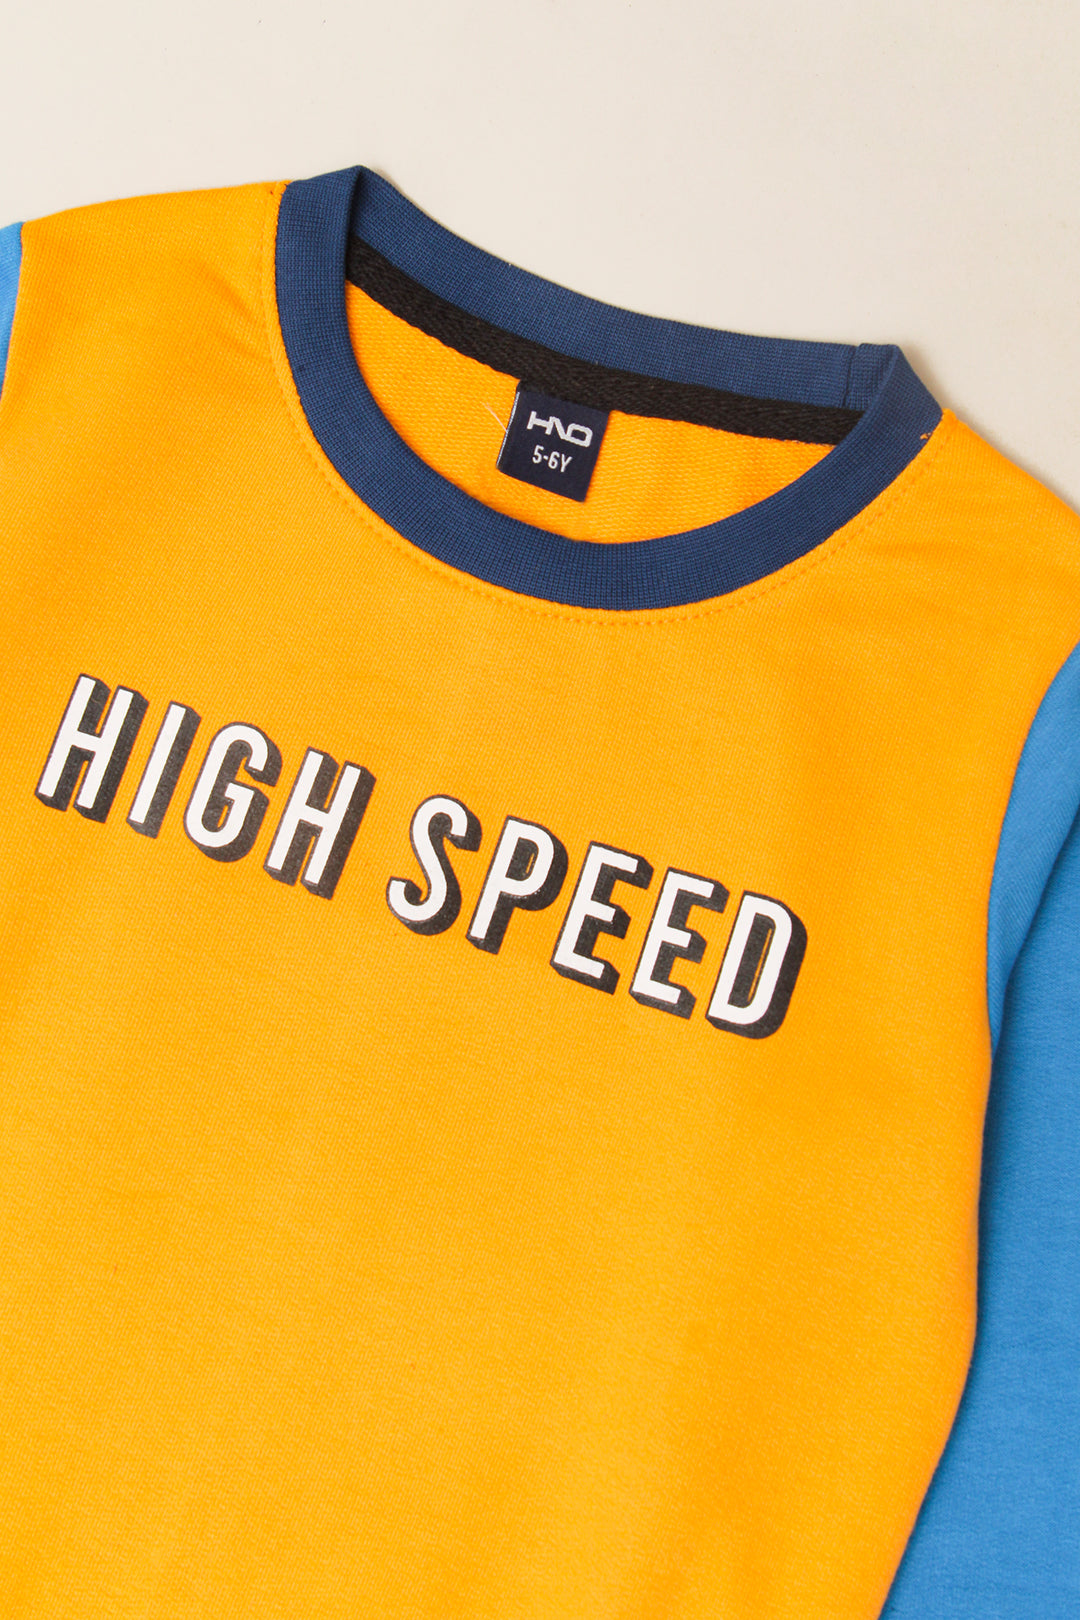 Boy's High Speed Sweat Shirt